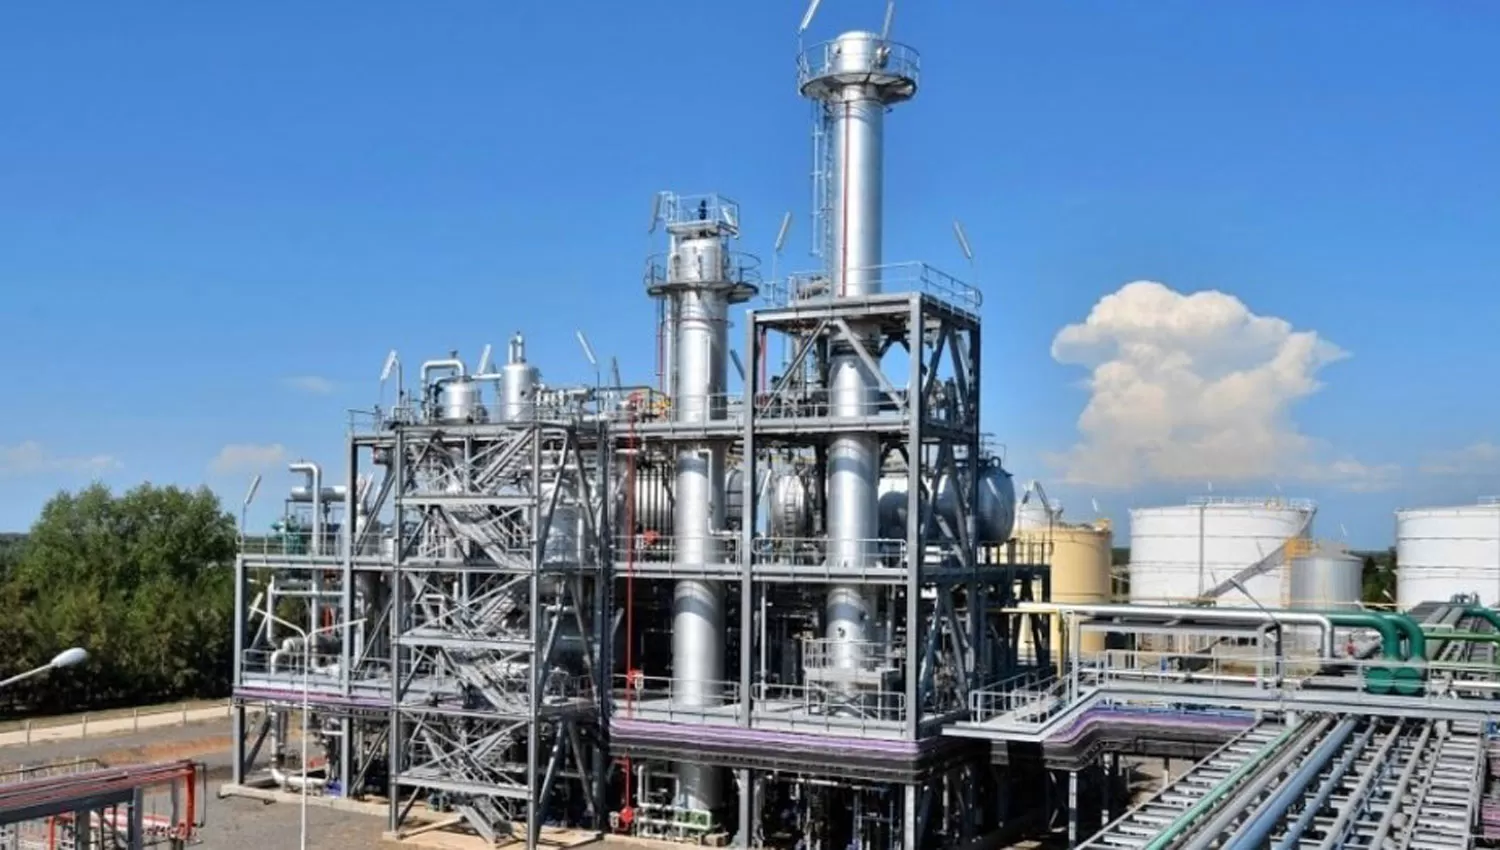 INDUSTRIA. Una planta de elaboración de biodiesel. FOTO TOMADA DE CLARIN